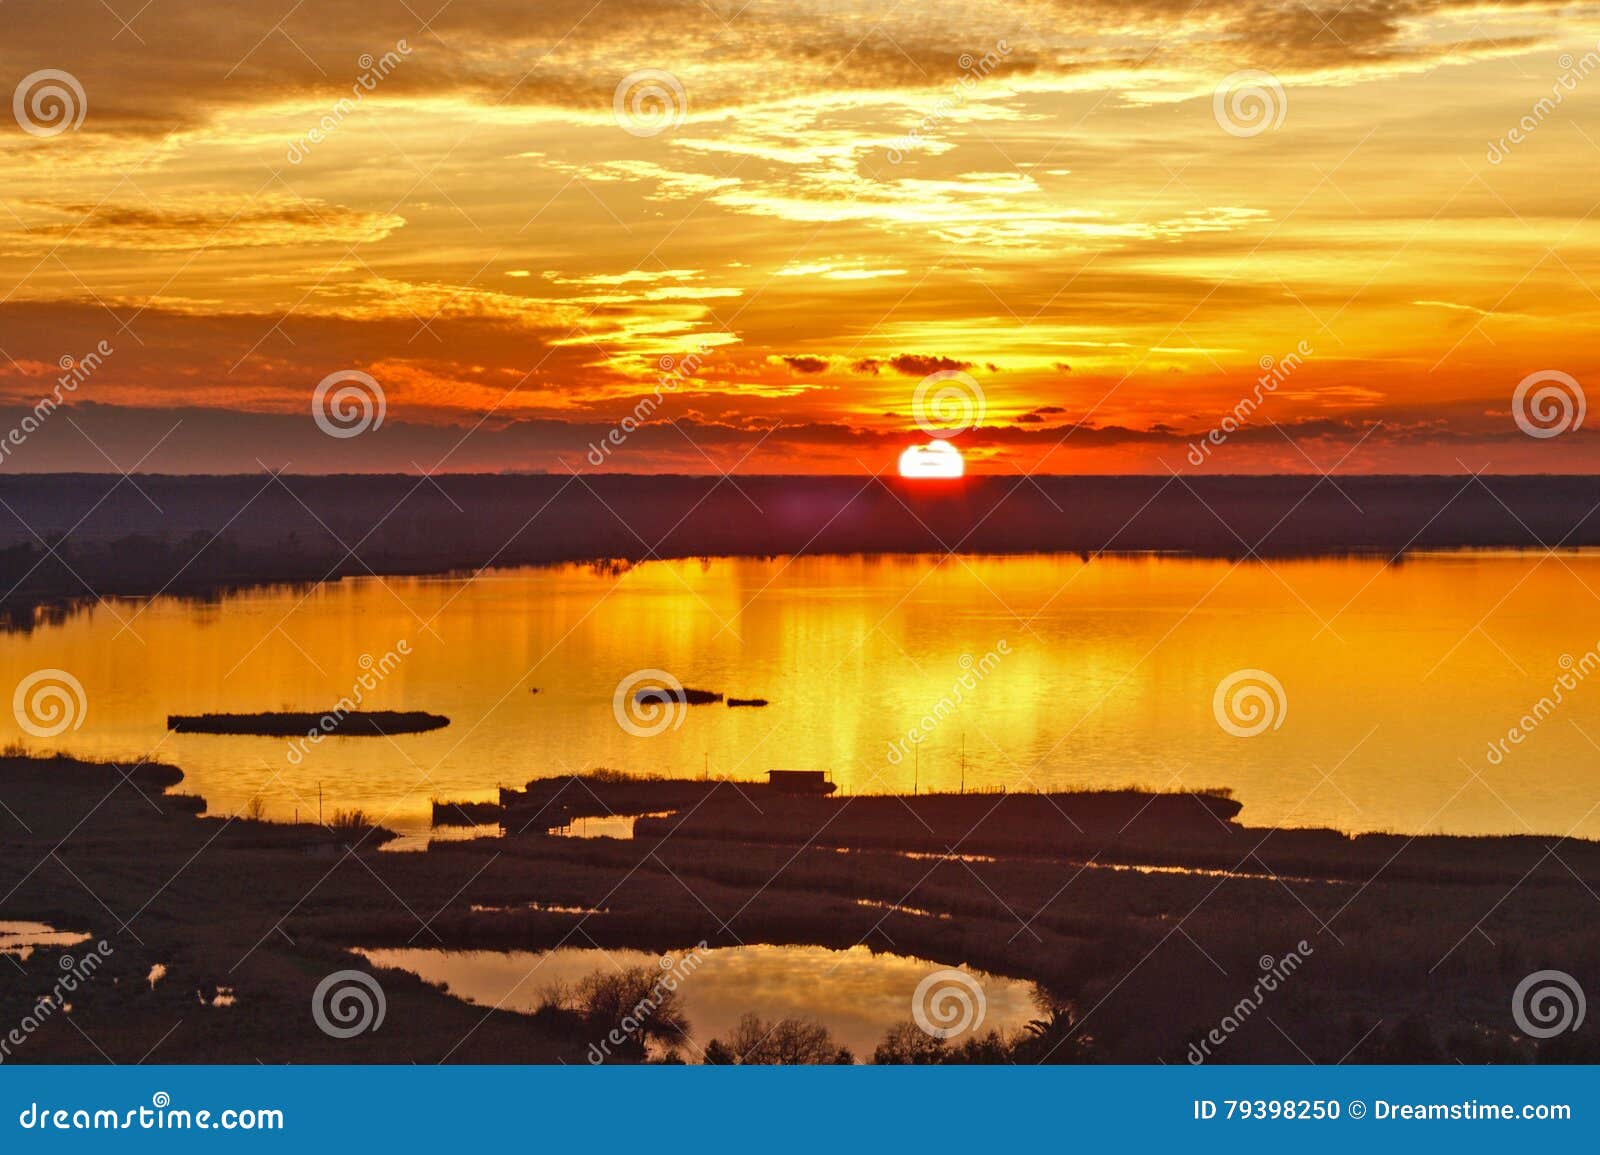 sunset on lake of massaciuccoli